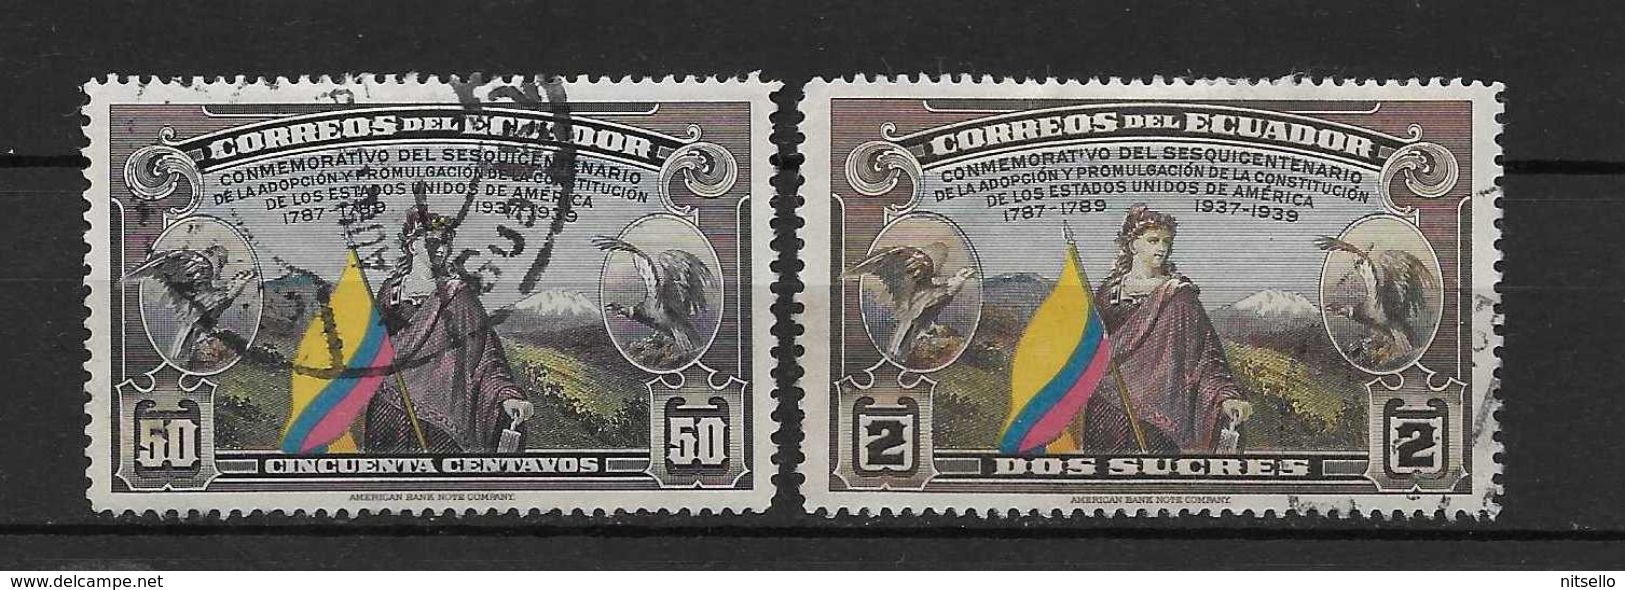 LOTE 1836   ///  (C018) ECUADOR  LUXE    ¡¡¡¡¡ LIQUIDATION !!!! - Ecuador